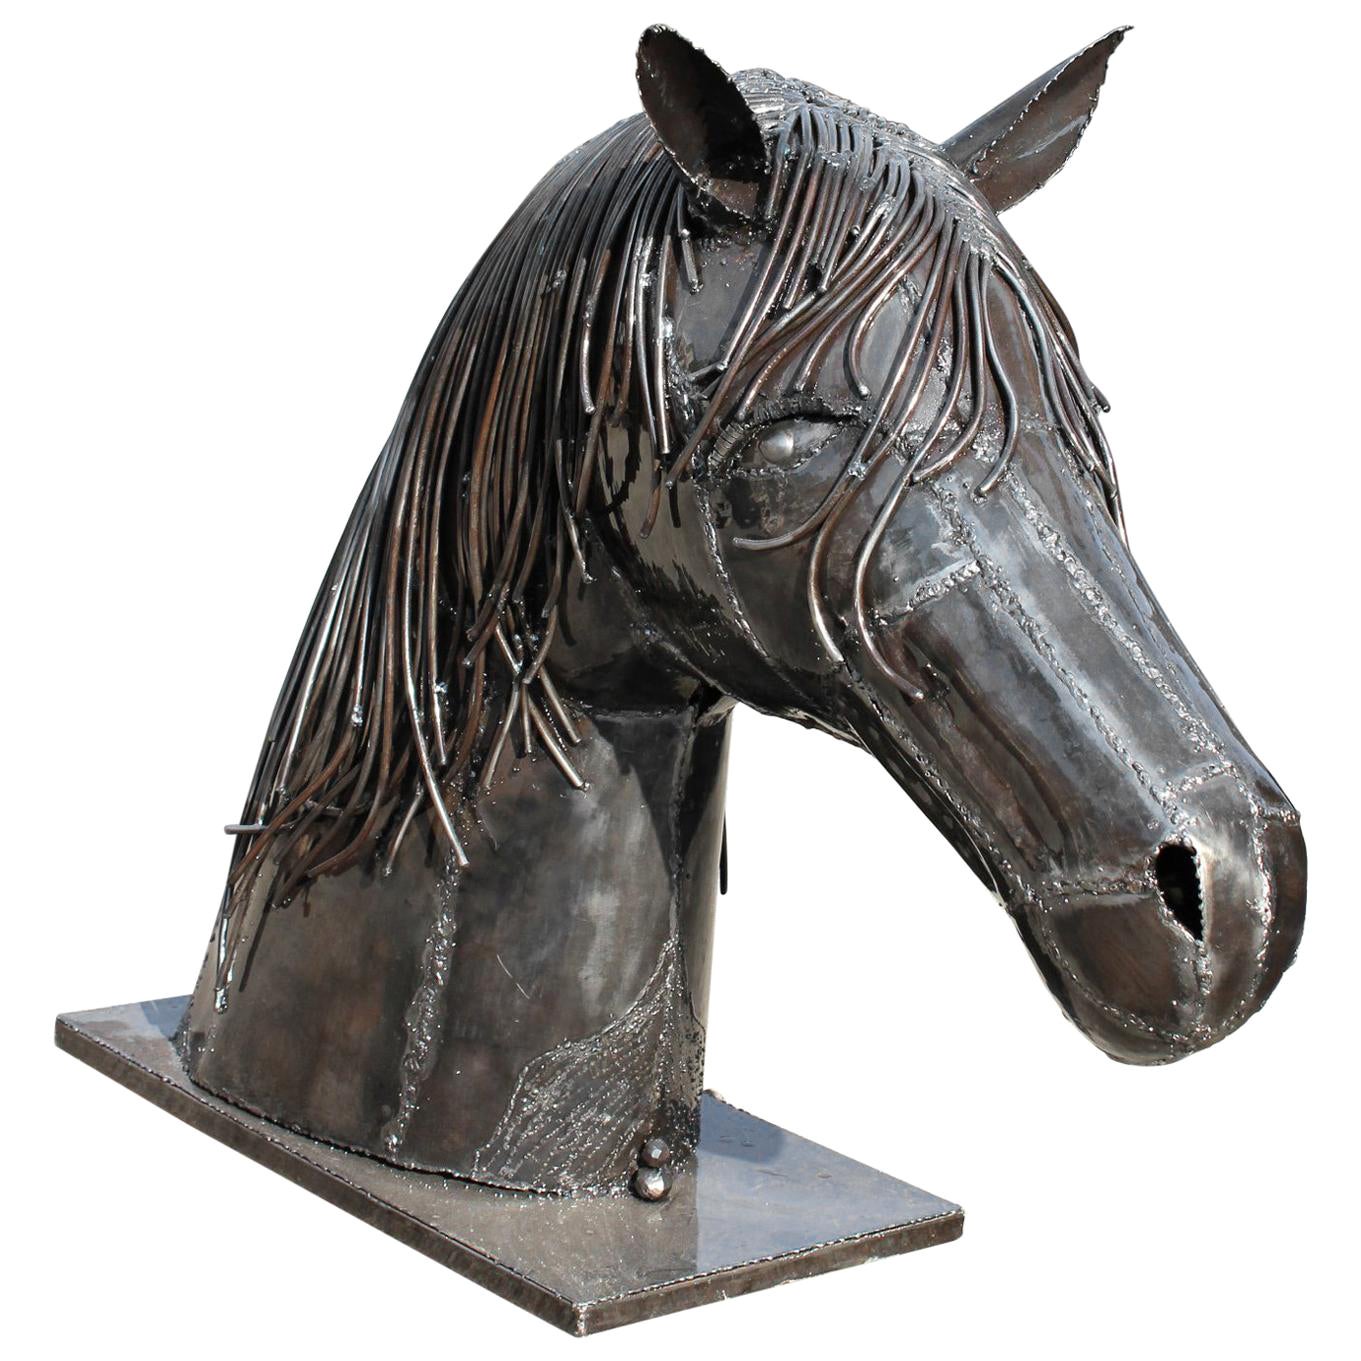 Cabeza de caballo de hierro hecha a mano con un acabado pulido brillante